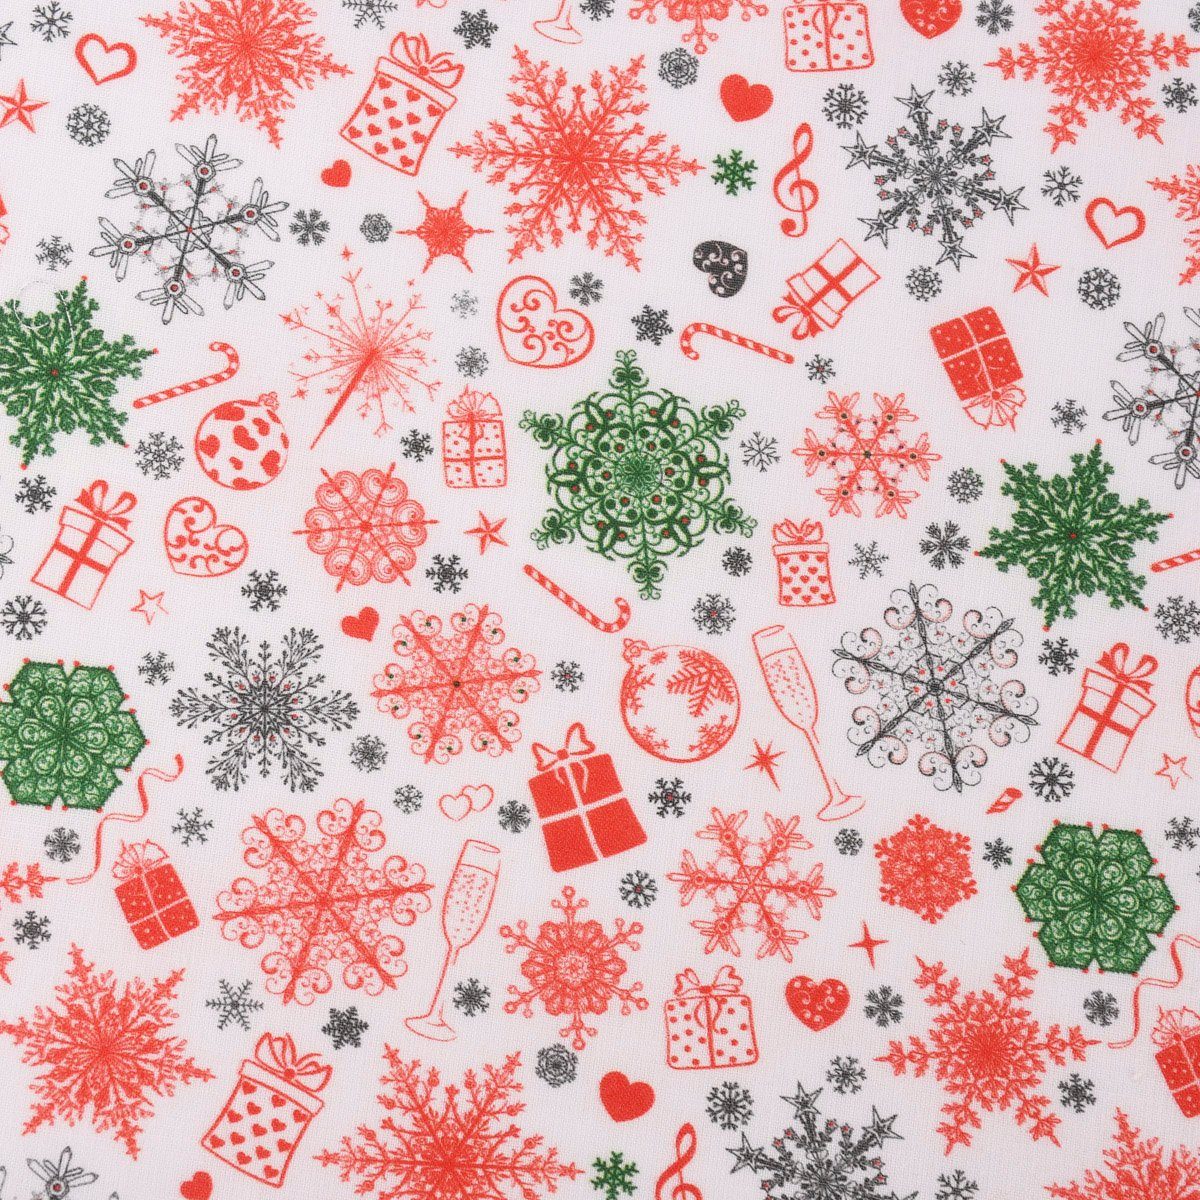 SCHÖNER LEBEN. Stoff »Baumwollstoff Digitaldruck Christmas Eiskristall Herz  Geschenk weiß rot grün 1,50m Breite« online kaufen | OTTO